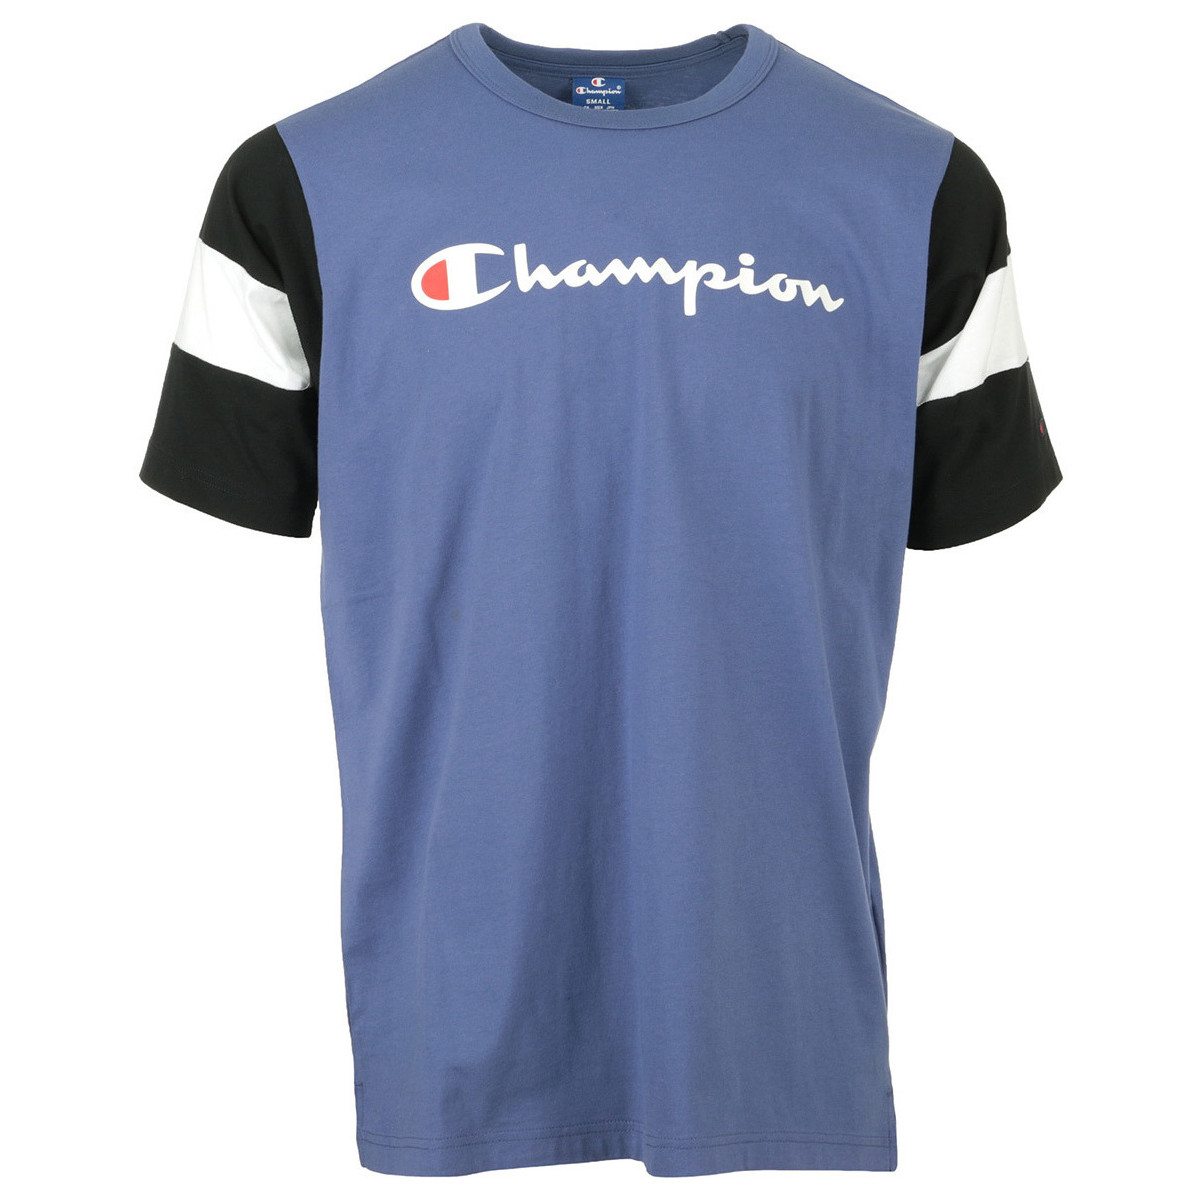 Abbigliamento Uomo T-shirt maniche corte Champion Crewneck T-Shirt Blu